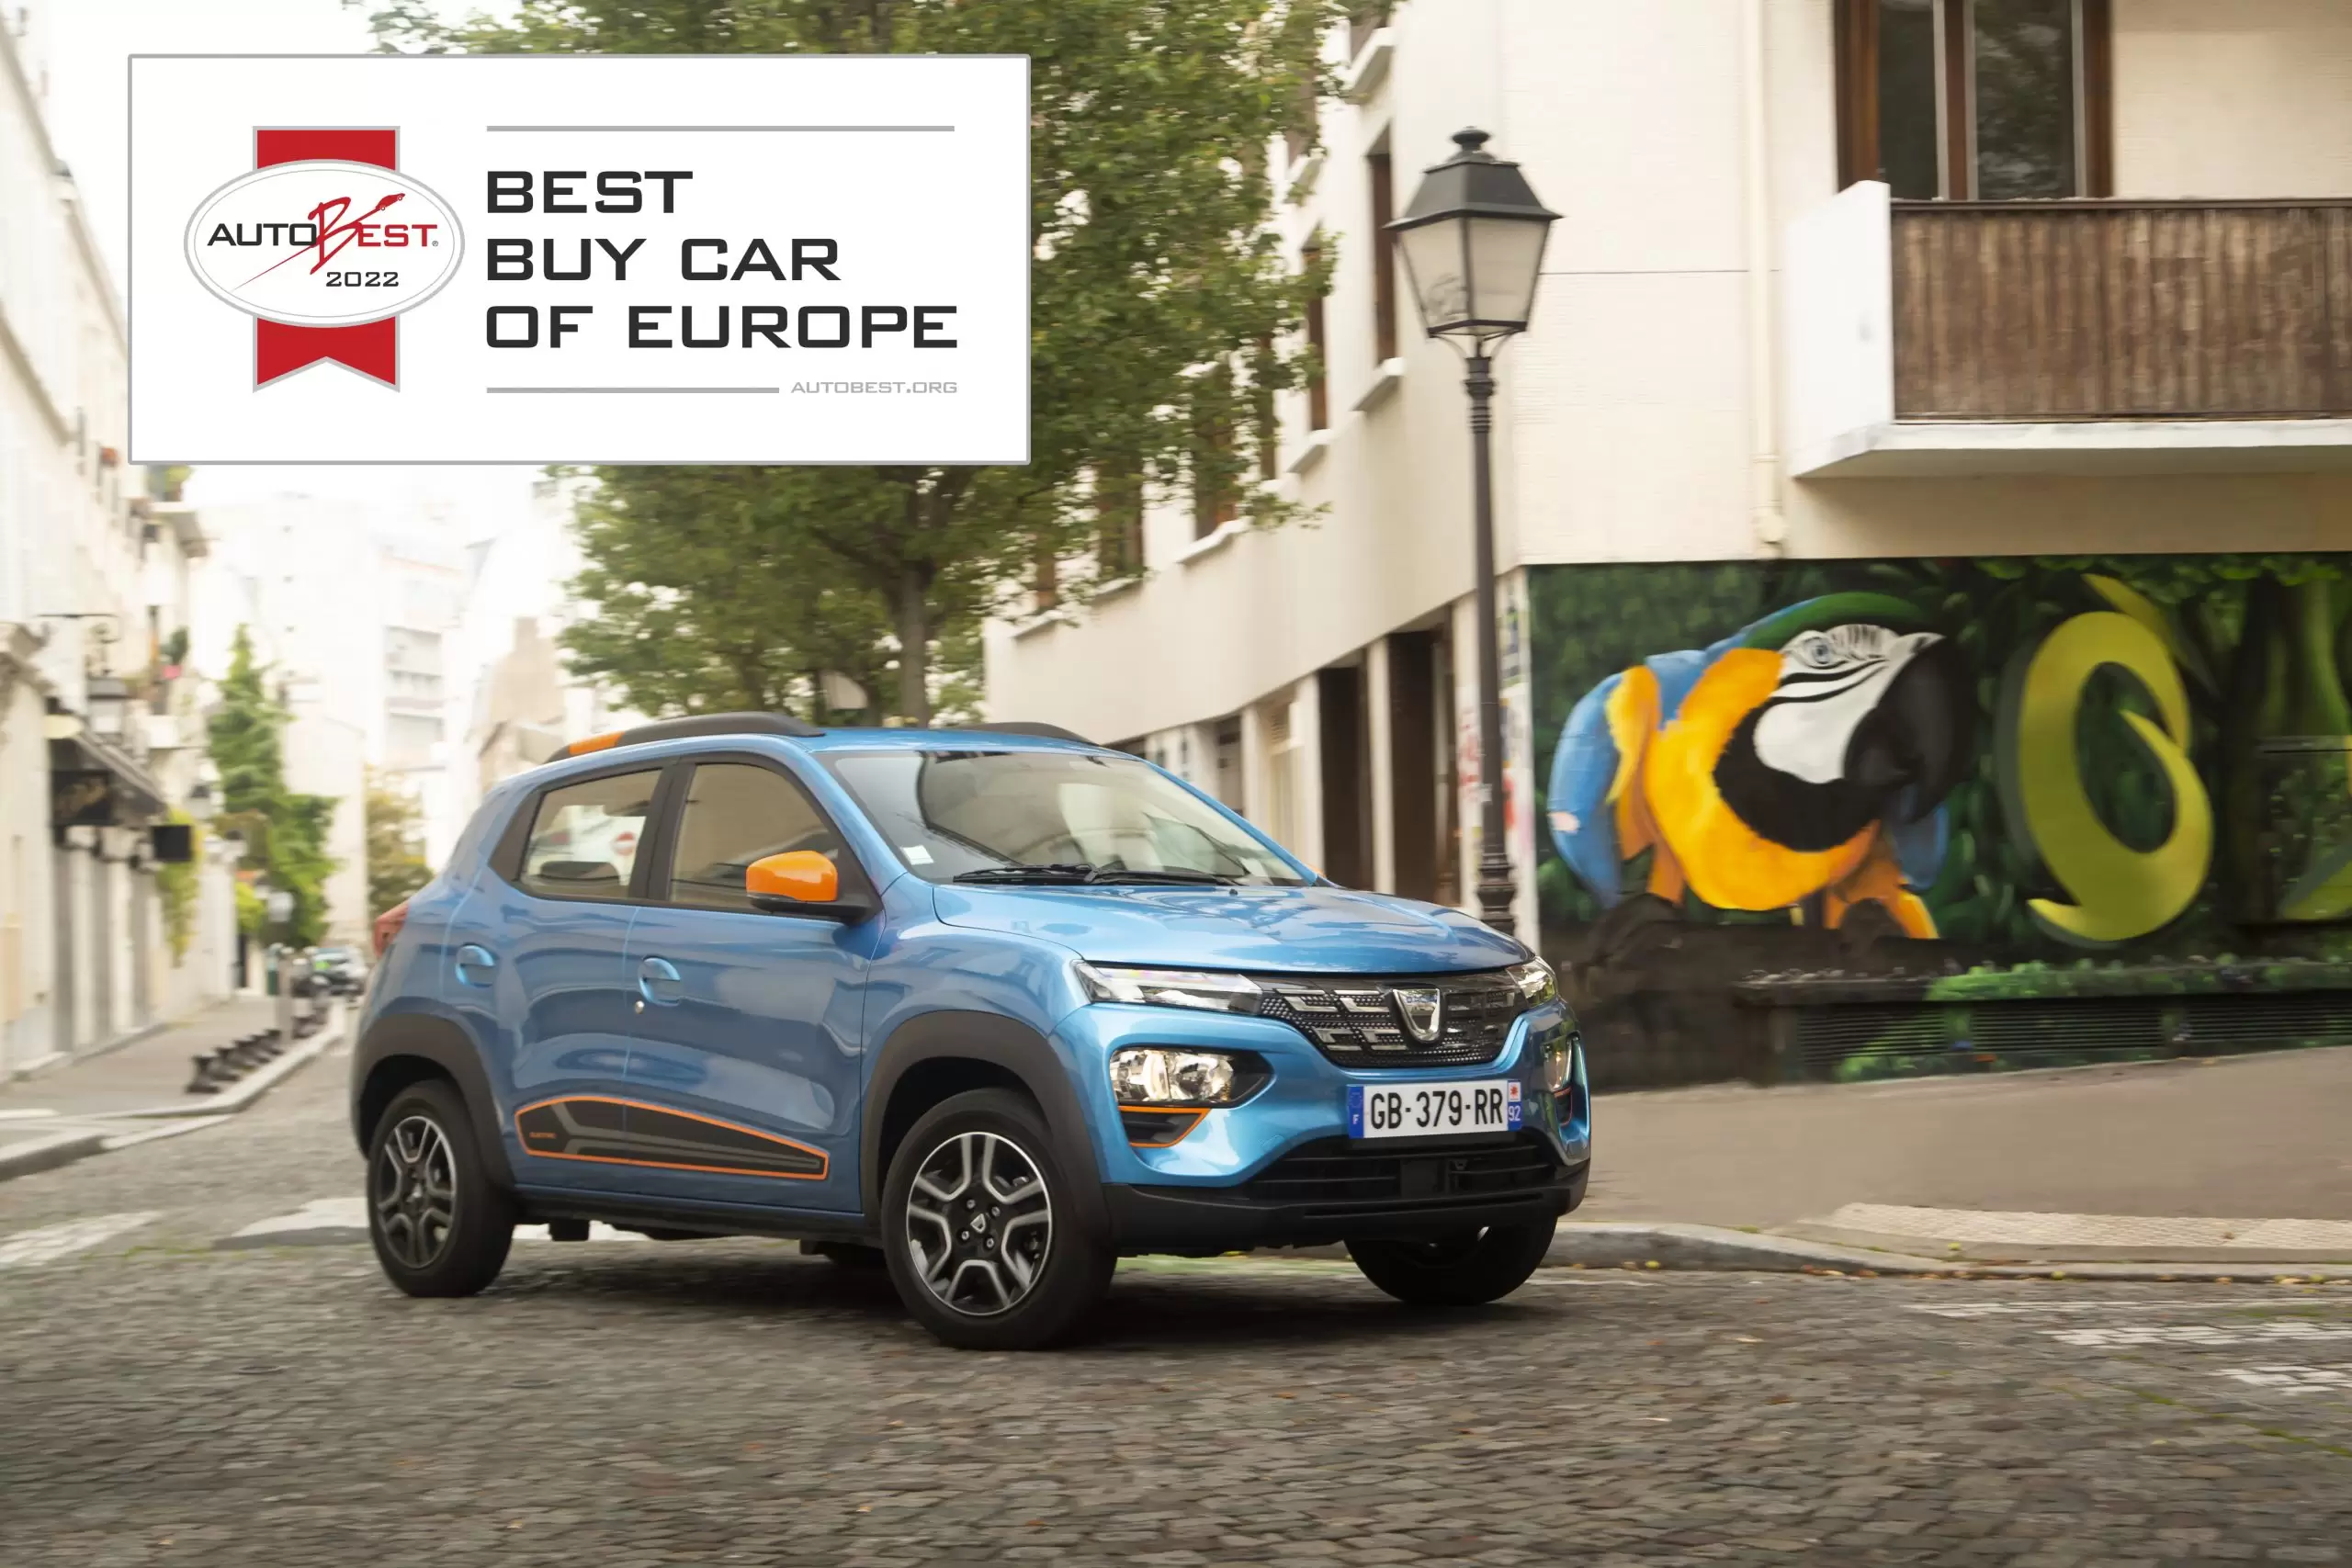 Dacia Spring Avrupa’da Satın Alınabilecek En İyi Otomobil Ödülünü Aldı